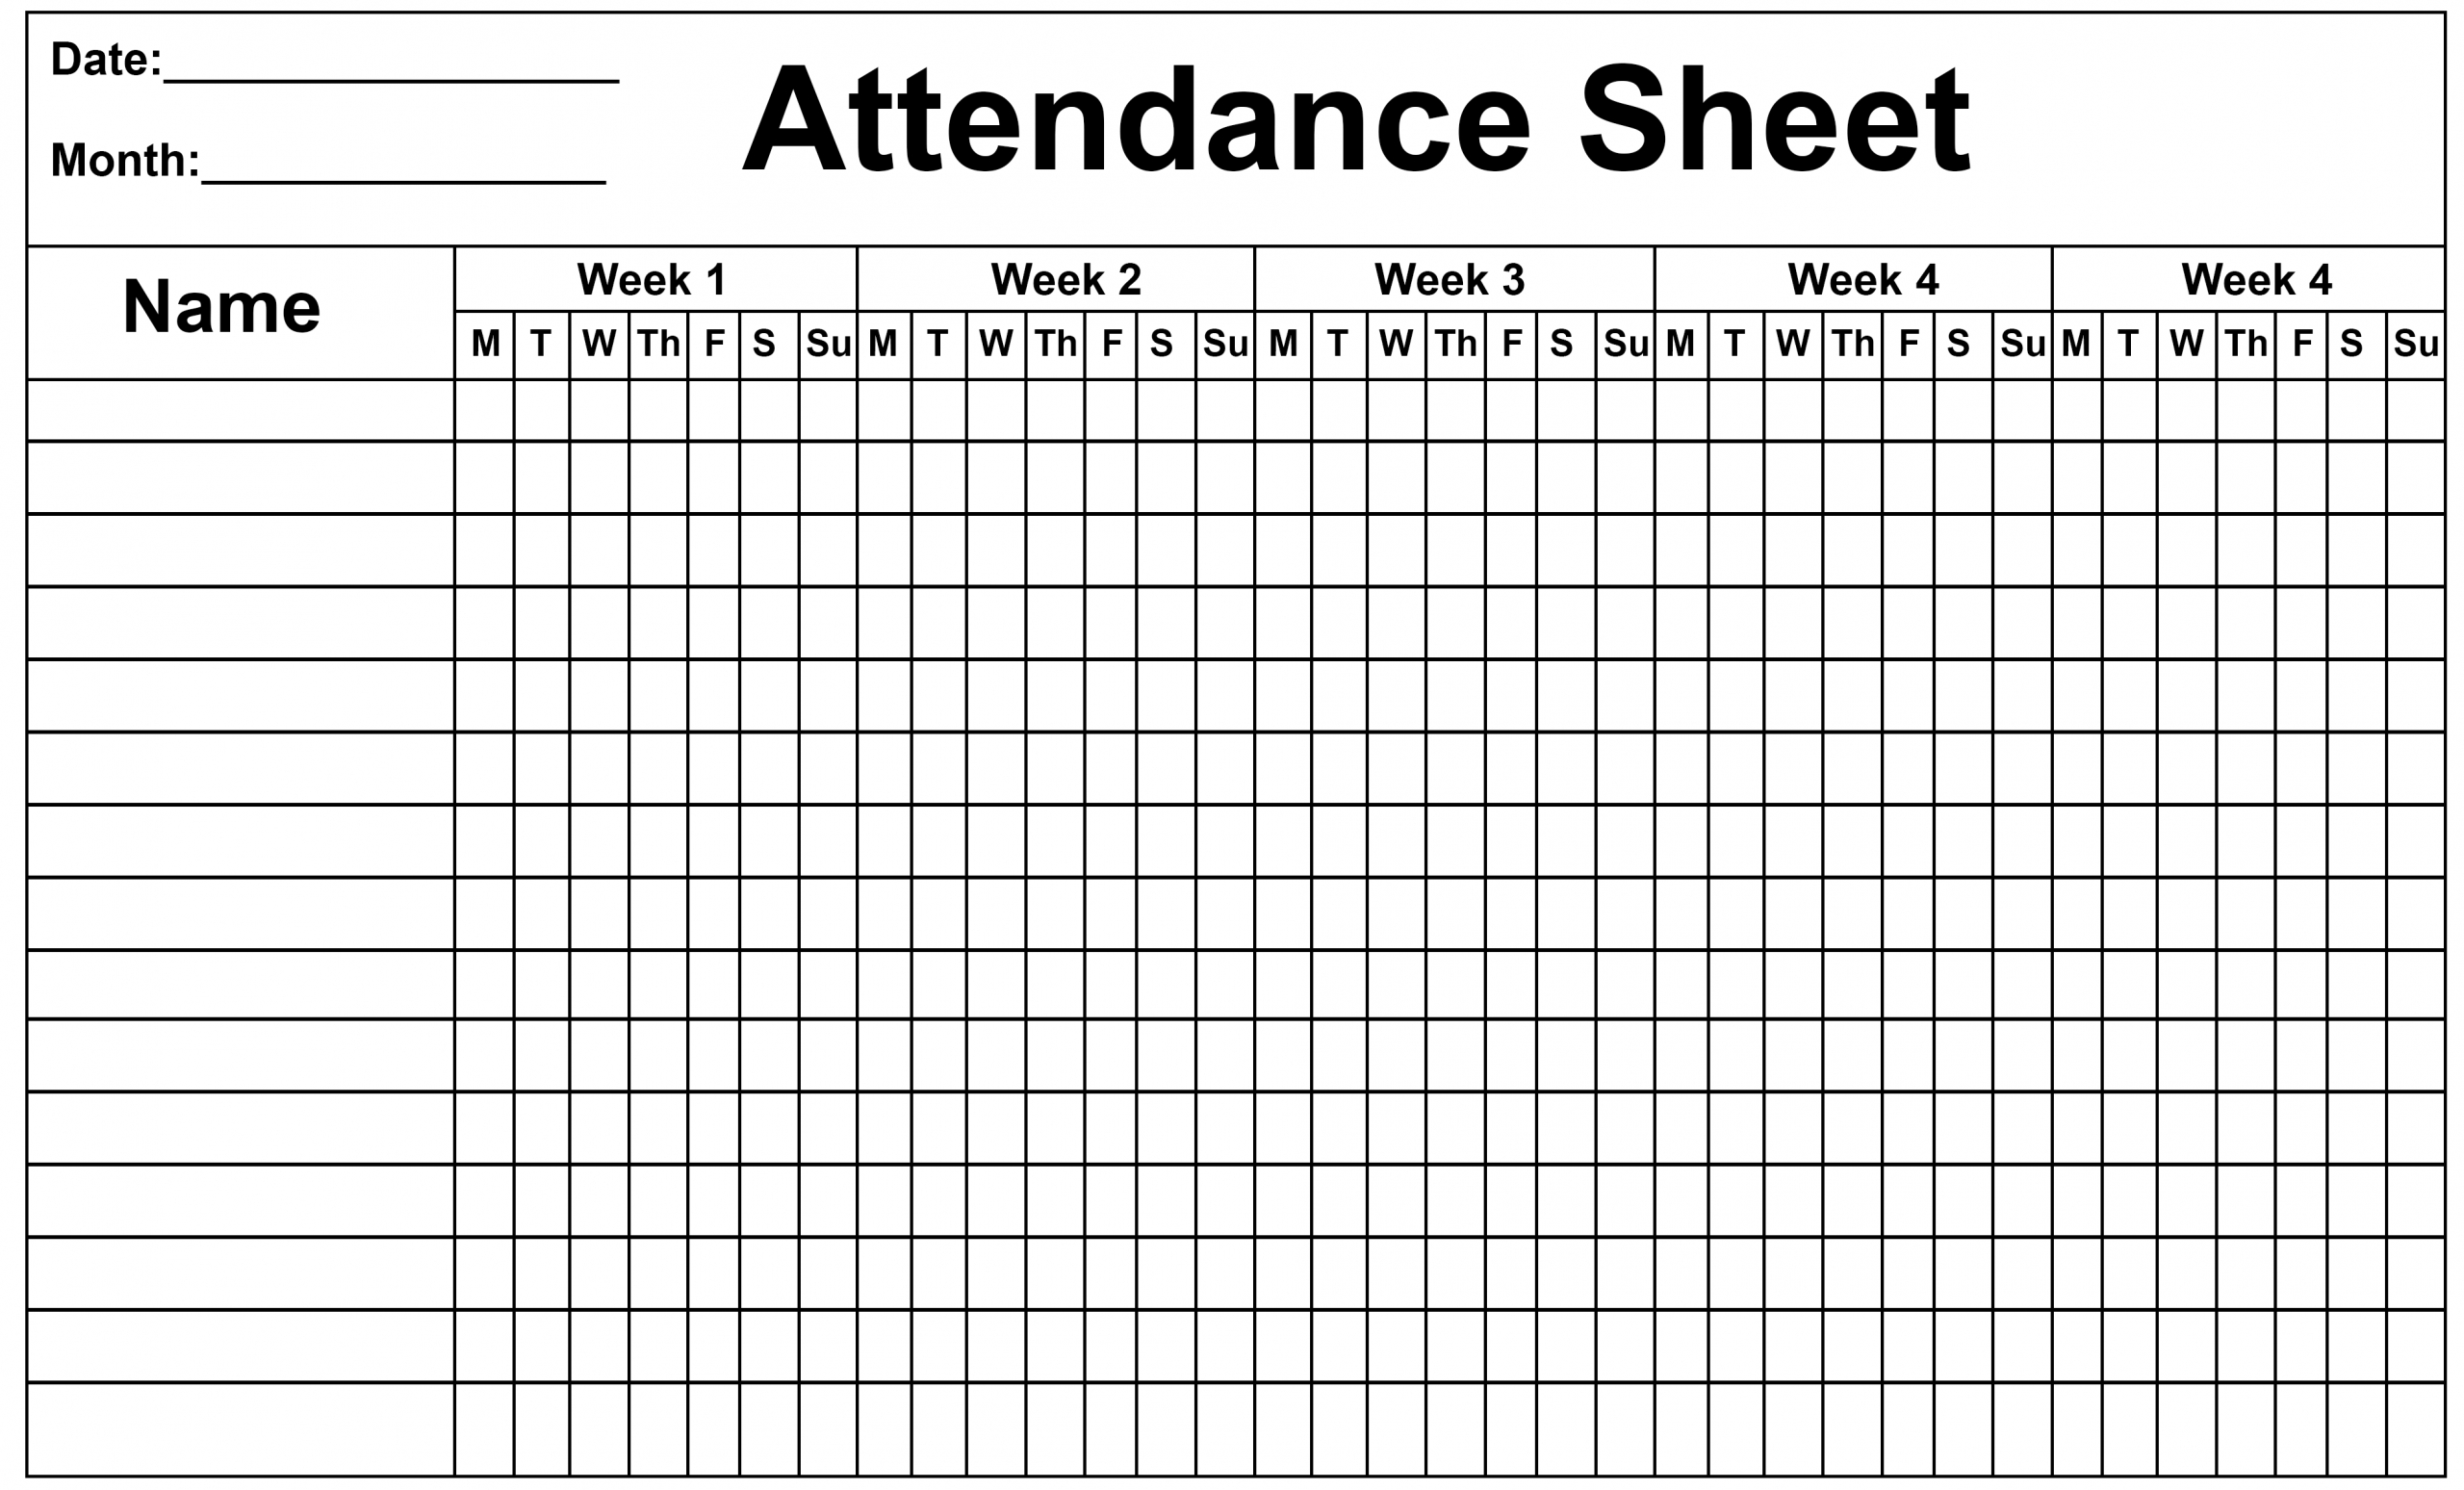 Pick 2020 Employee Attendance Calendar | Calendar